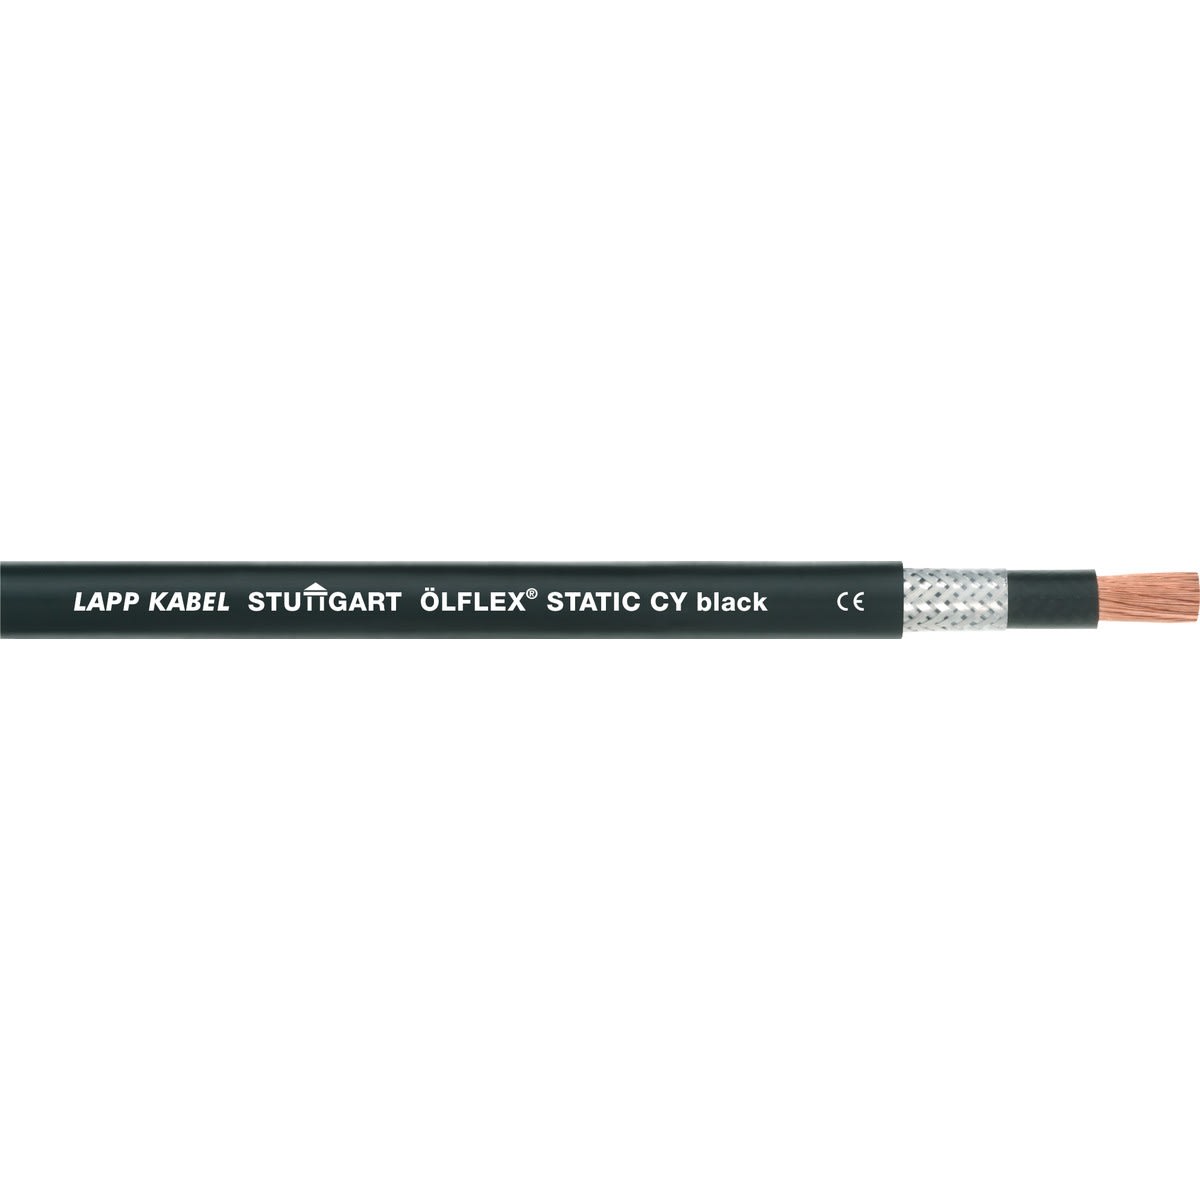 Lapp - ÖLFLEX STATIC CY black 1X95